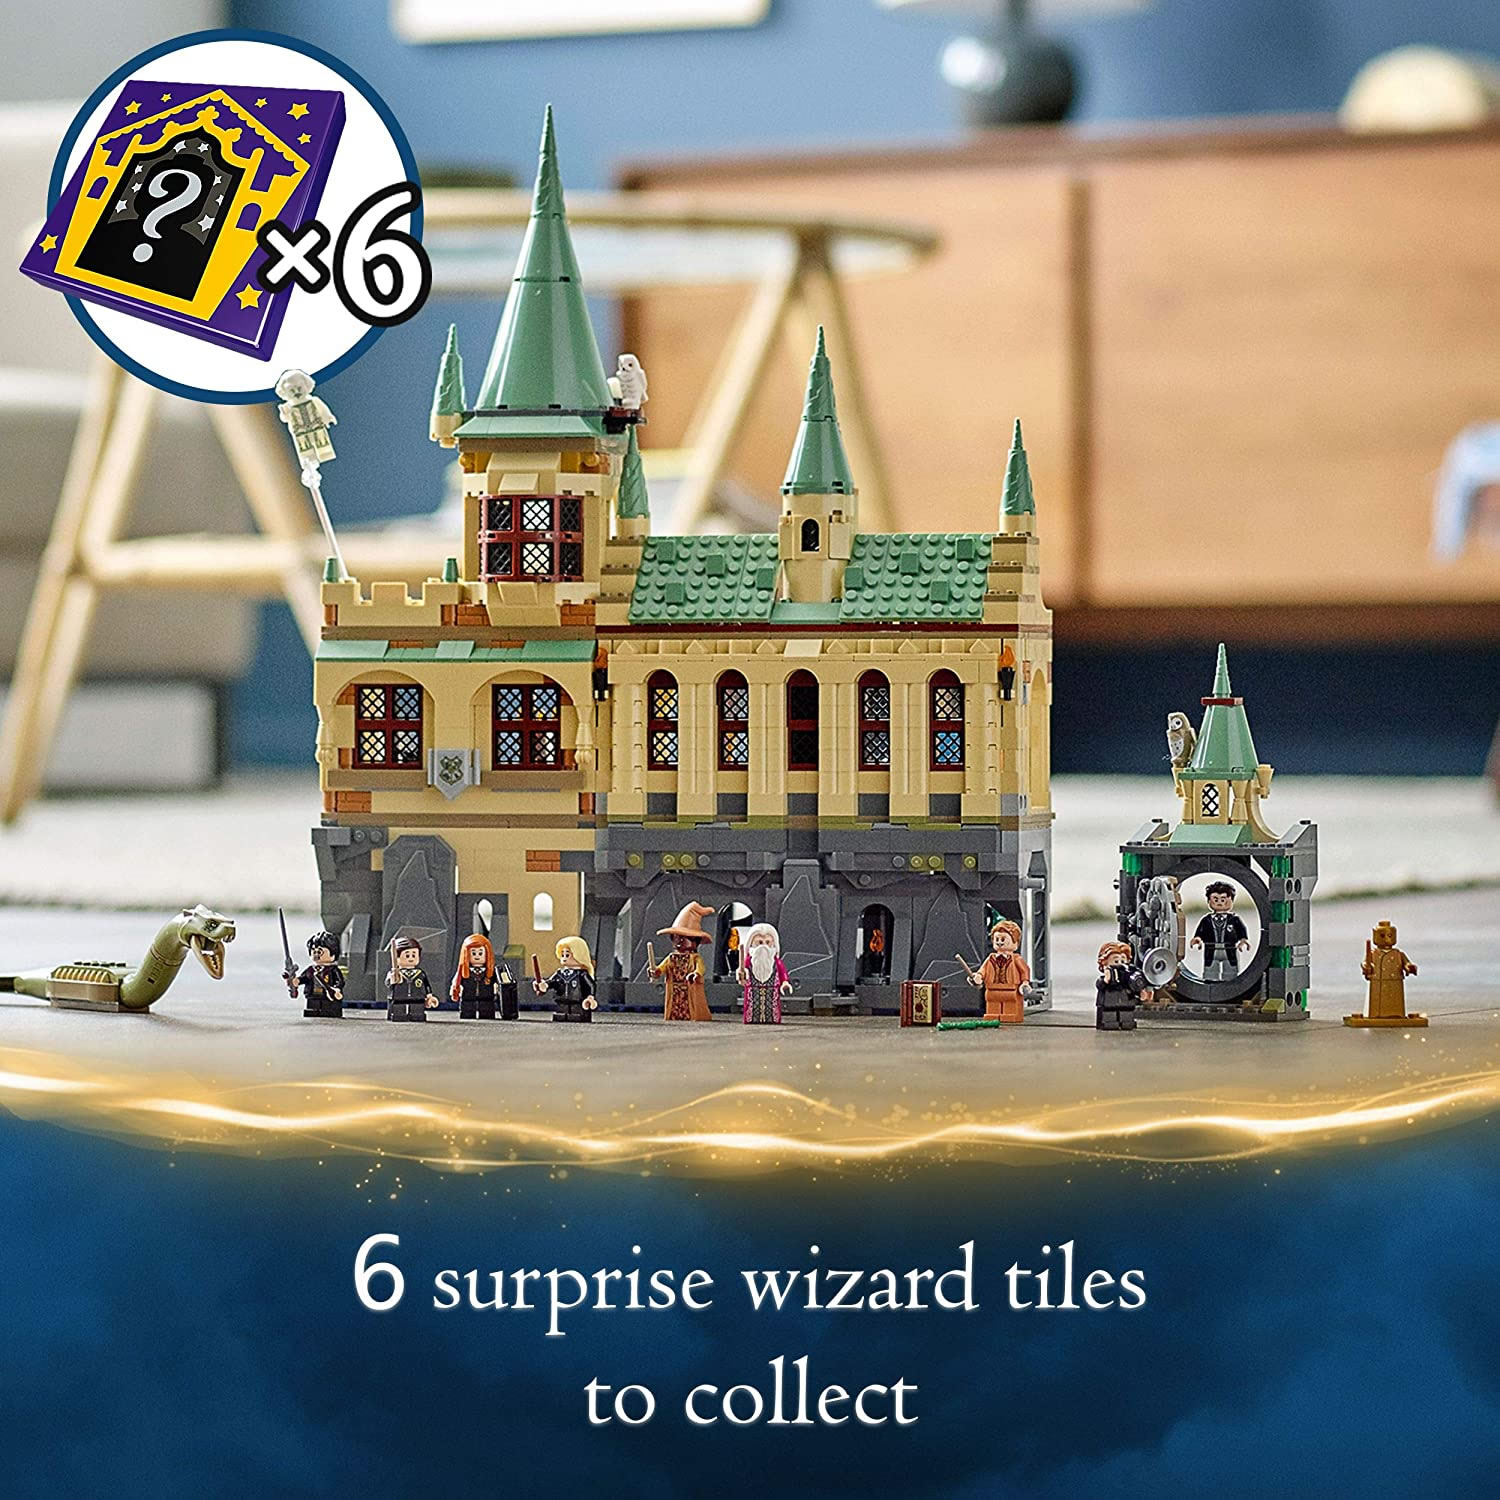 LEGO Harry Potter La Chambre des Secrets de Poudlard - 76389